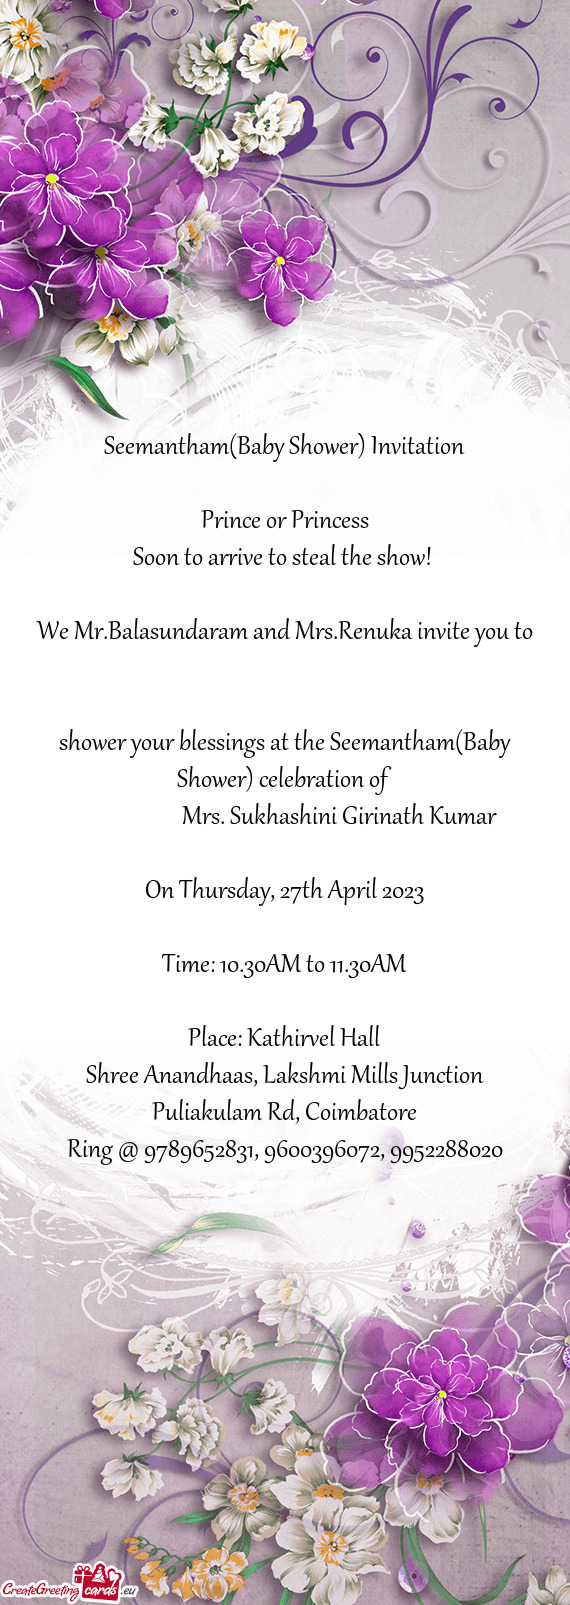 We Mr.Balasundaram and Mrs.Renuka invite you to